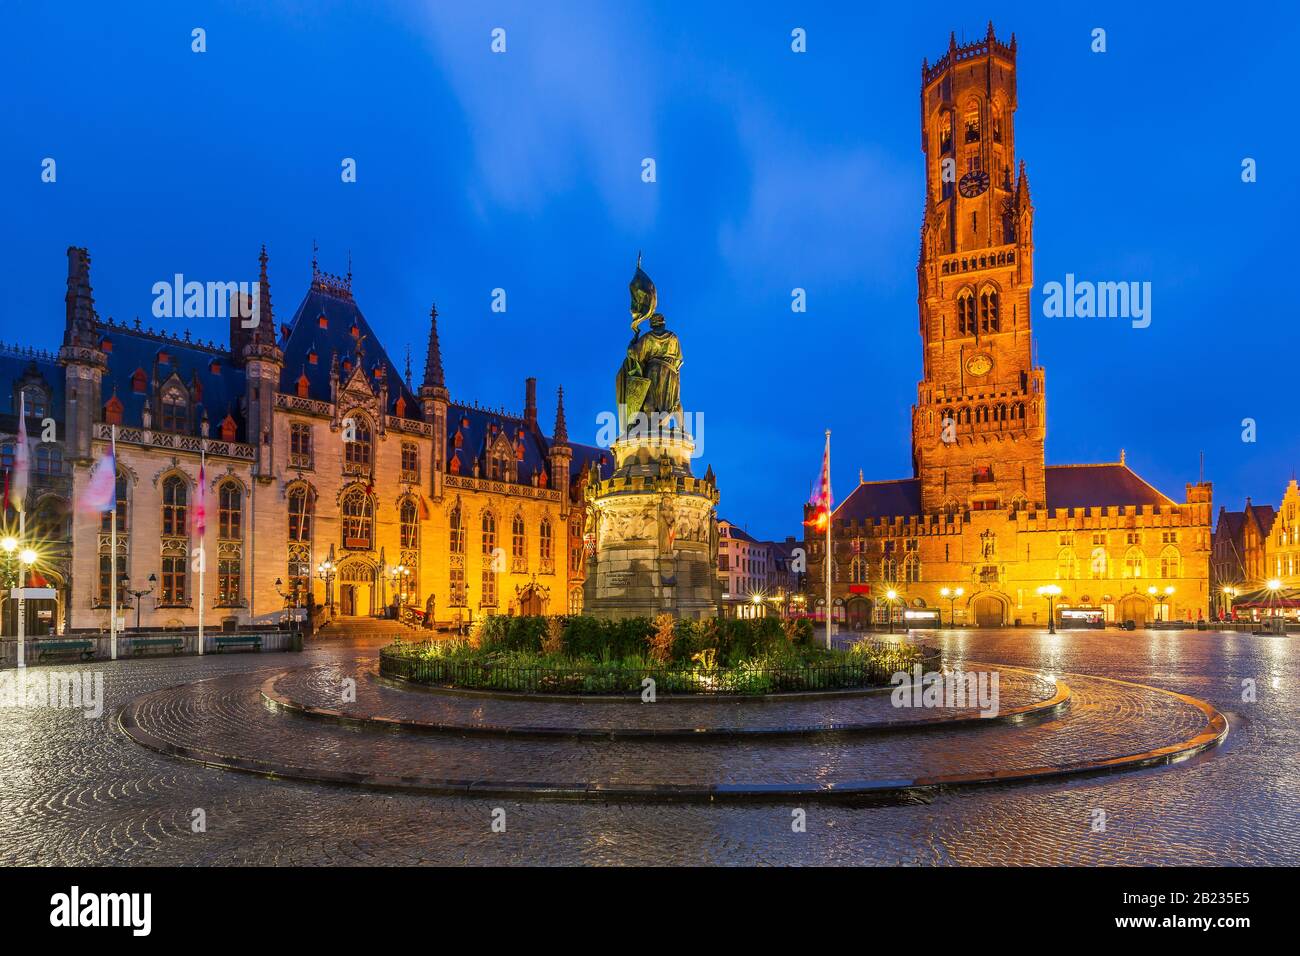 Belgique, Bruges, place Grote Markt avec le Provinciaal Hof, Jan-Breydel-Monument et le beffroi. Banque D'Images